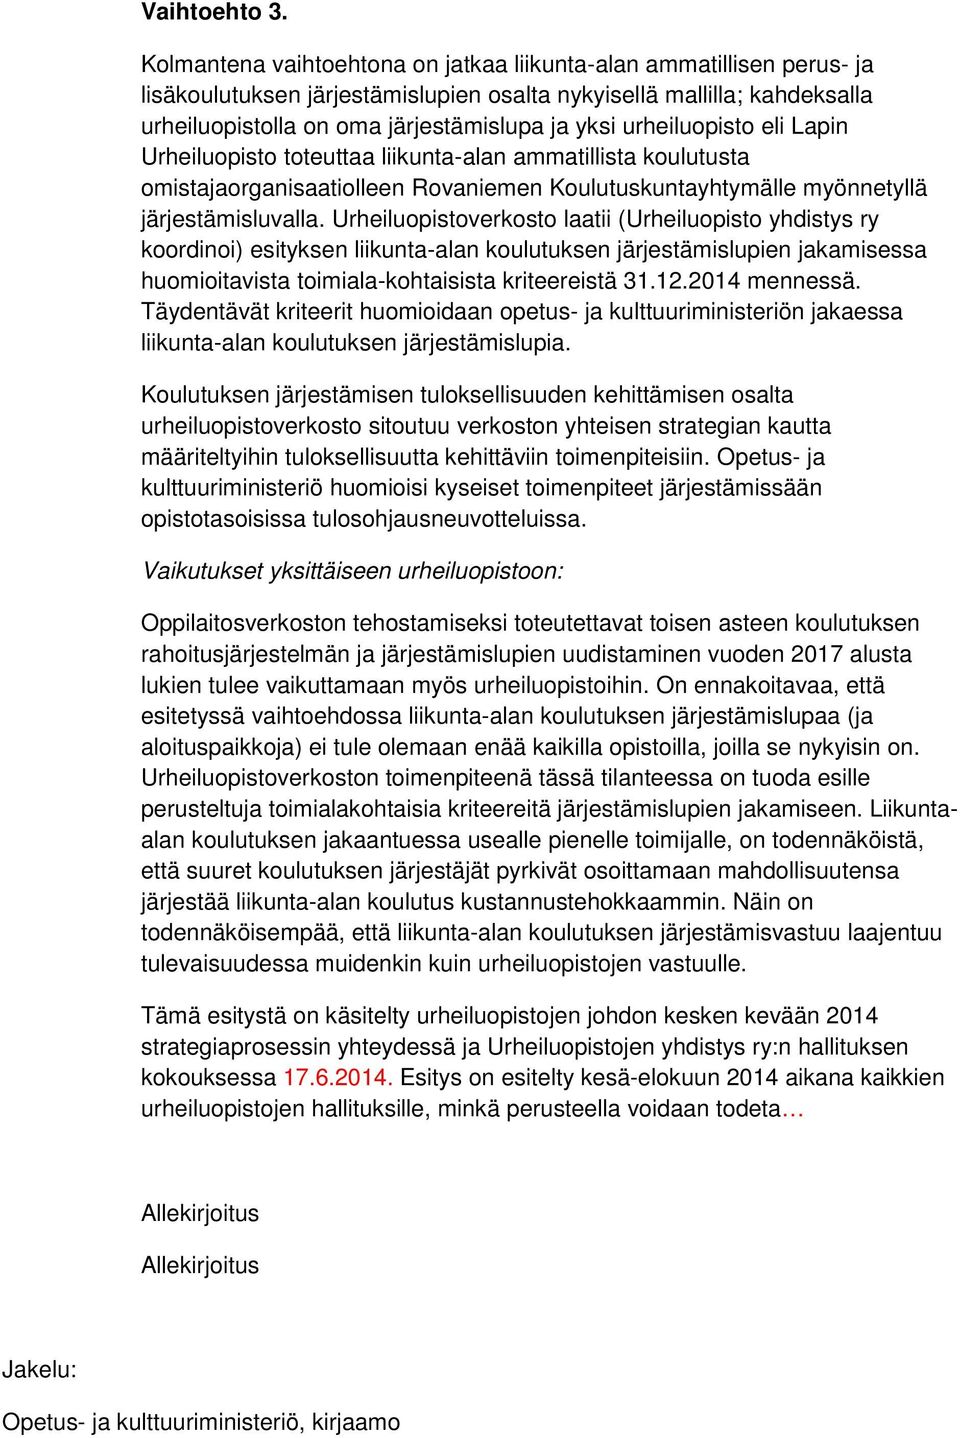 urheiluopisto eli Lapin Urheiluopisto toteuttaa liikunta-alan ammatillista koulutusta omistajaorganisaatiolleen Rovaniemen Koulutuskuntayhtymälle myönnetyllä järjestämisluvalla.